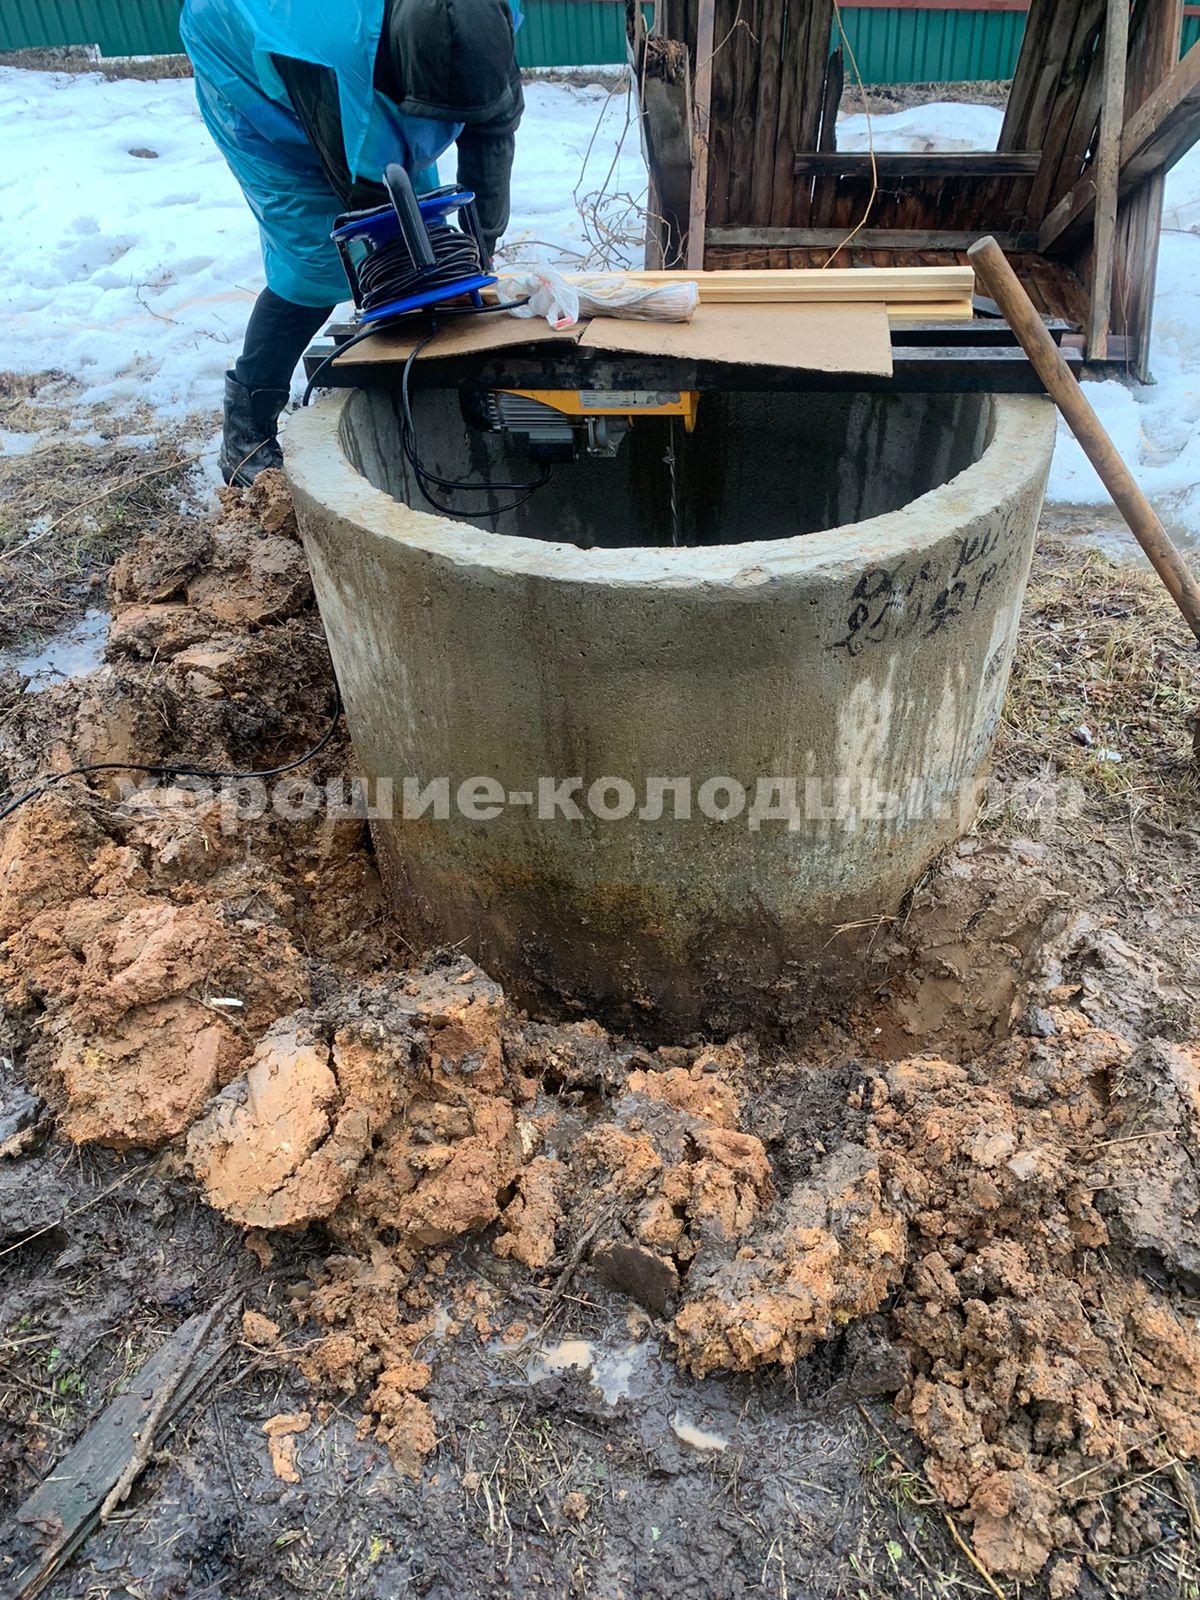 Чистка колодца на воду 7 колец в СНТ Троицкое, Истринский р-н, Подмосковье.